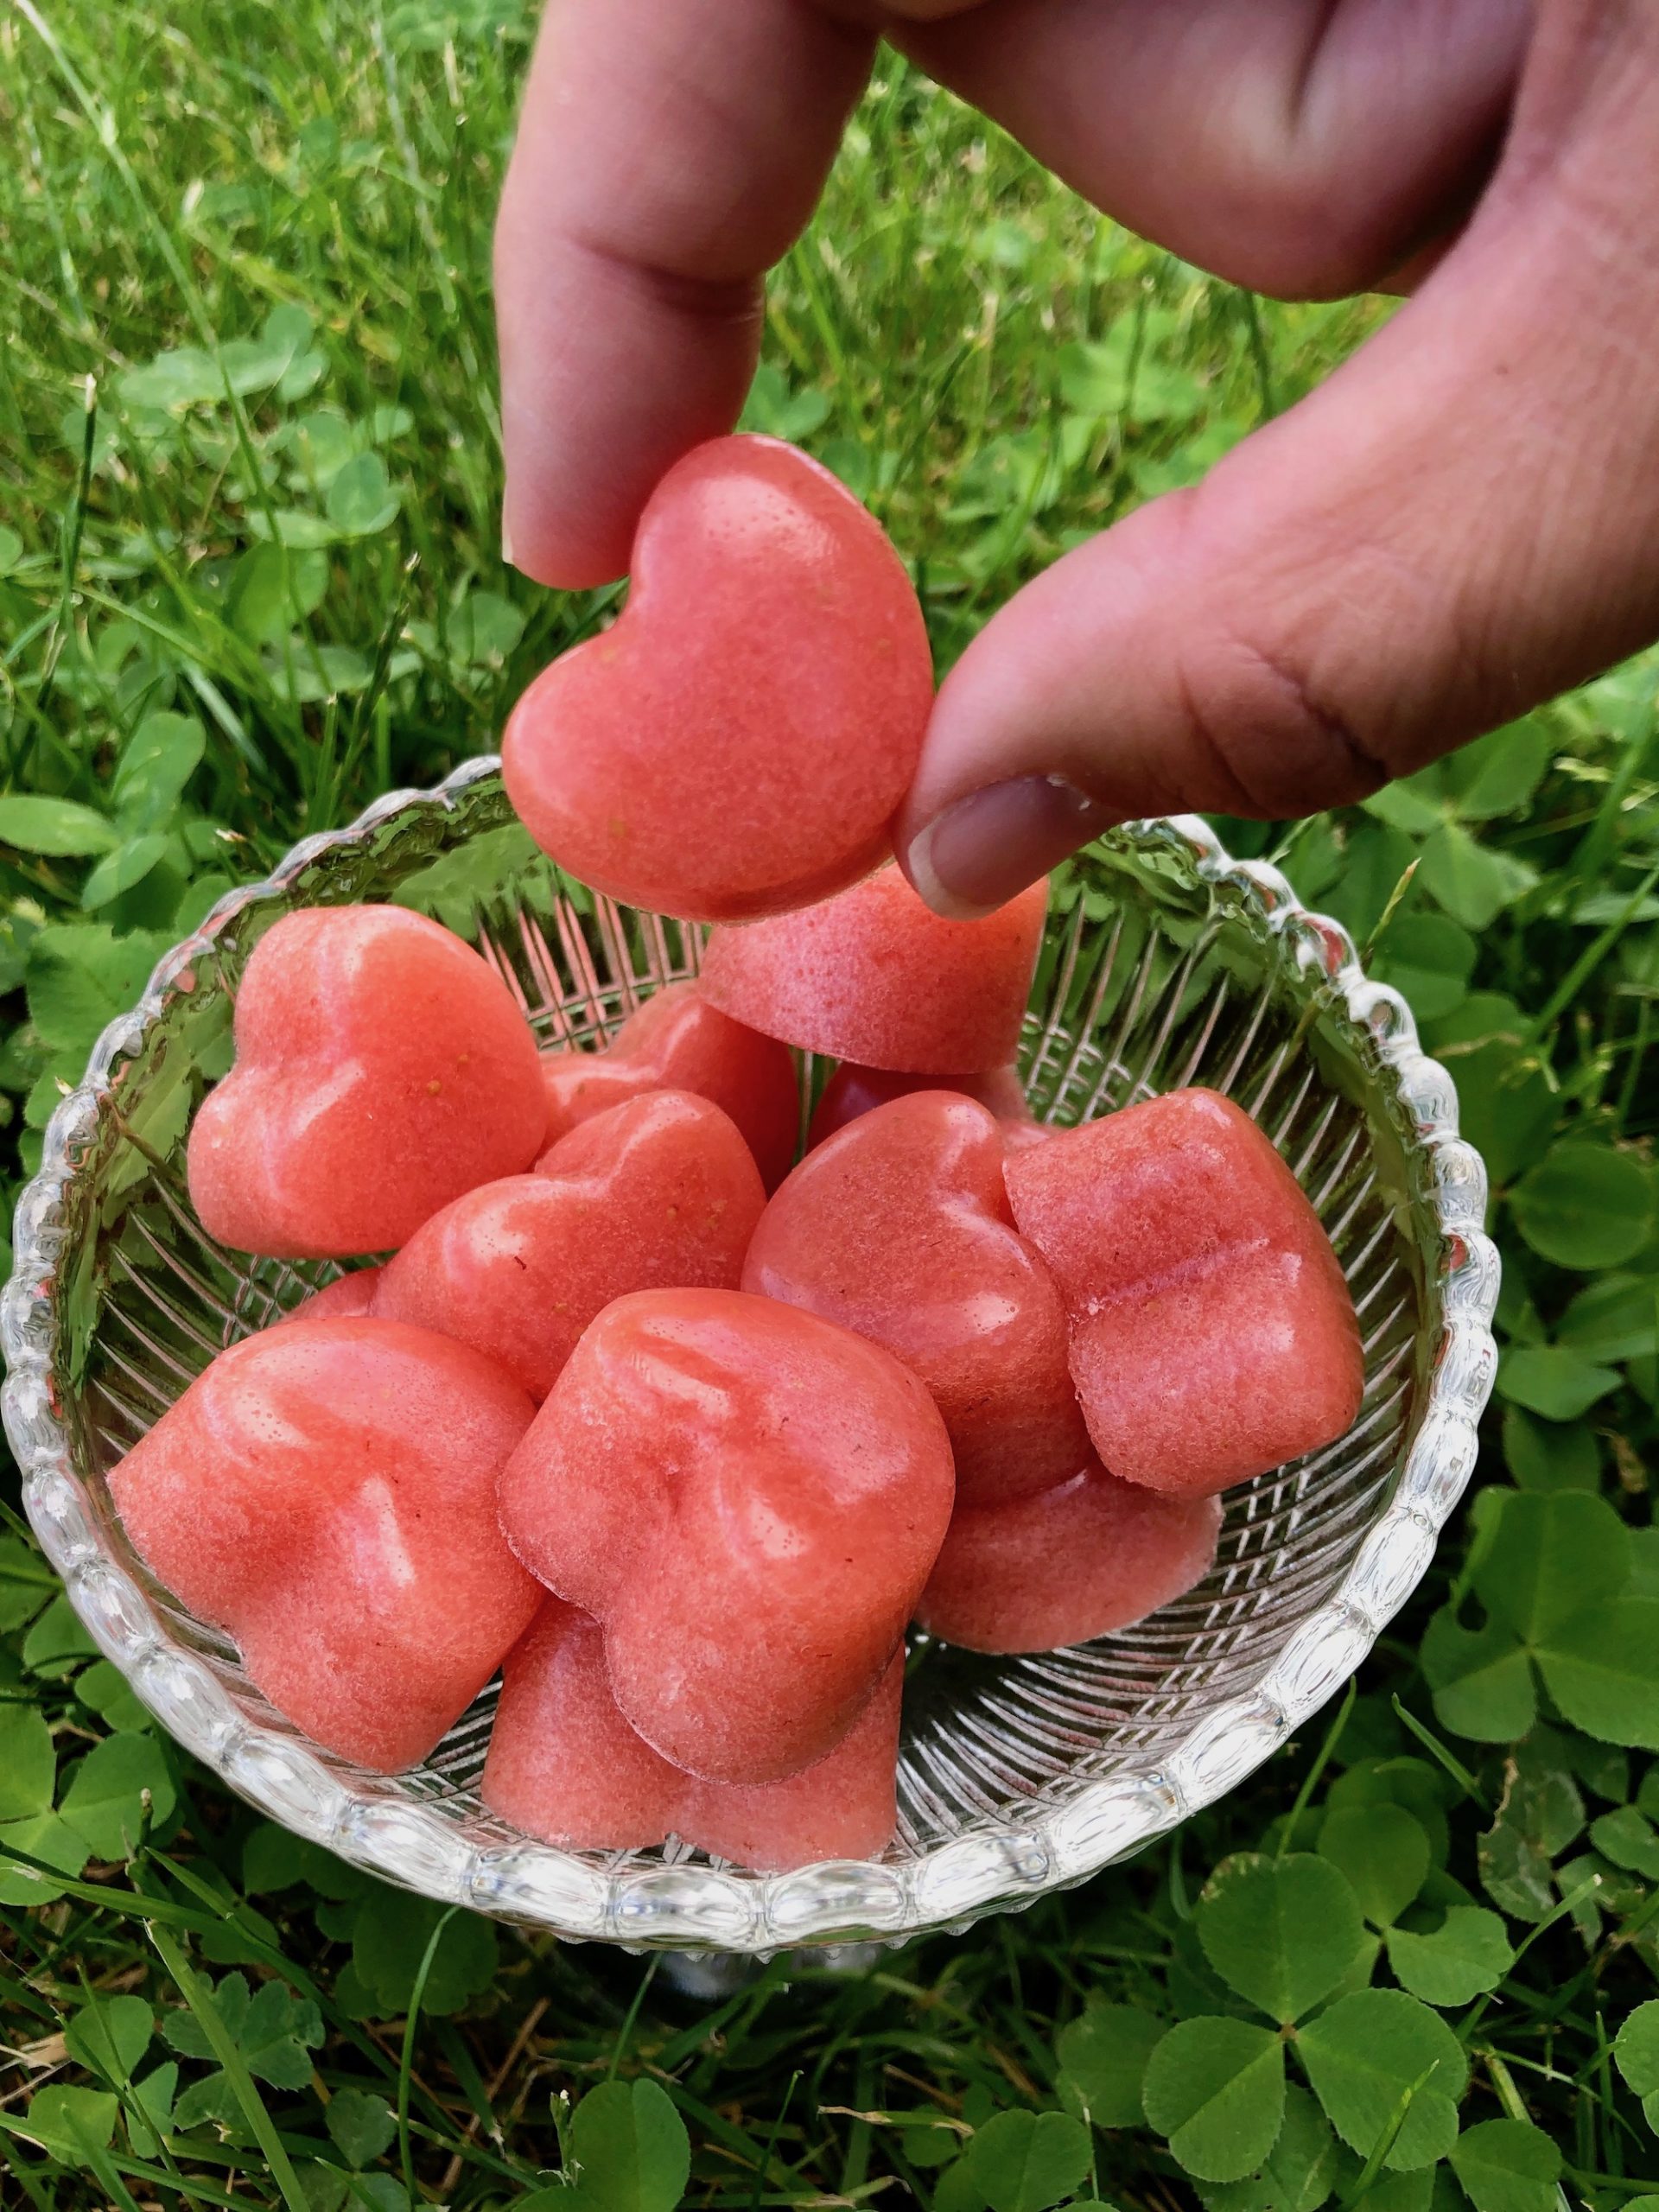 Njut av gott Gelégodis gjort på jordgubbar